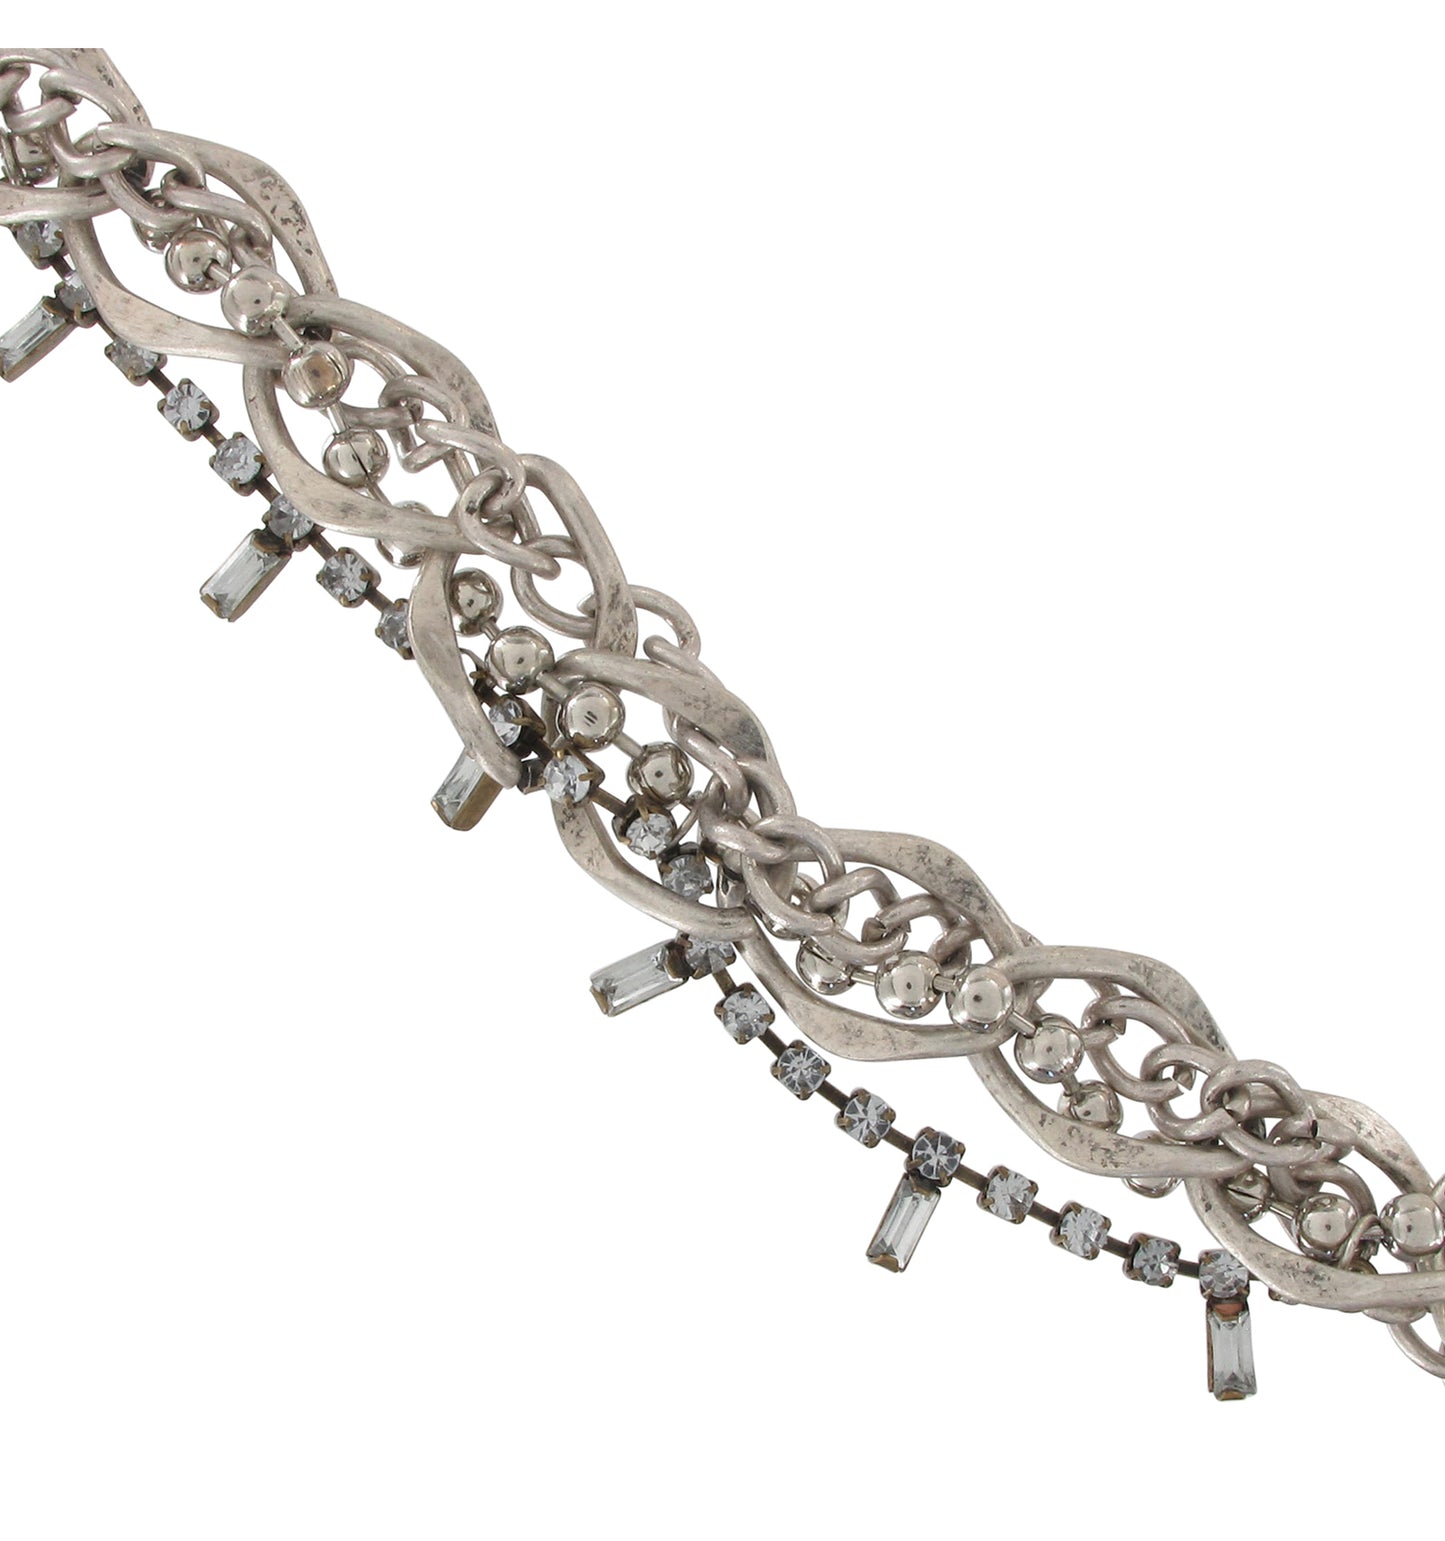 Multistrand Necklace Chain Gold Silver Tone Rhinestone 16 - 18"